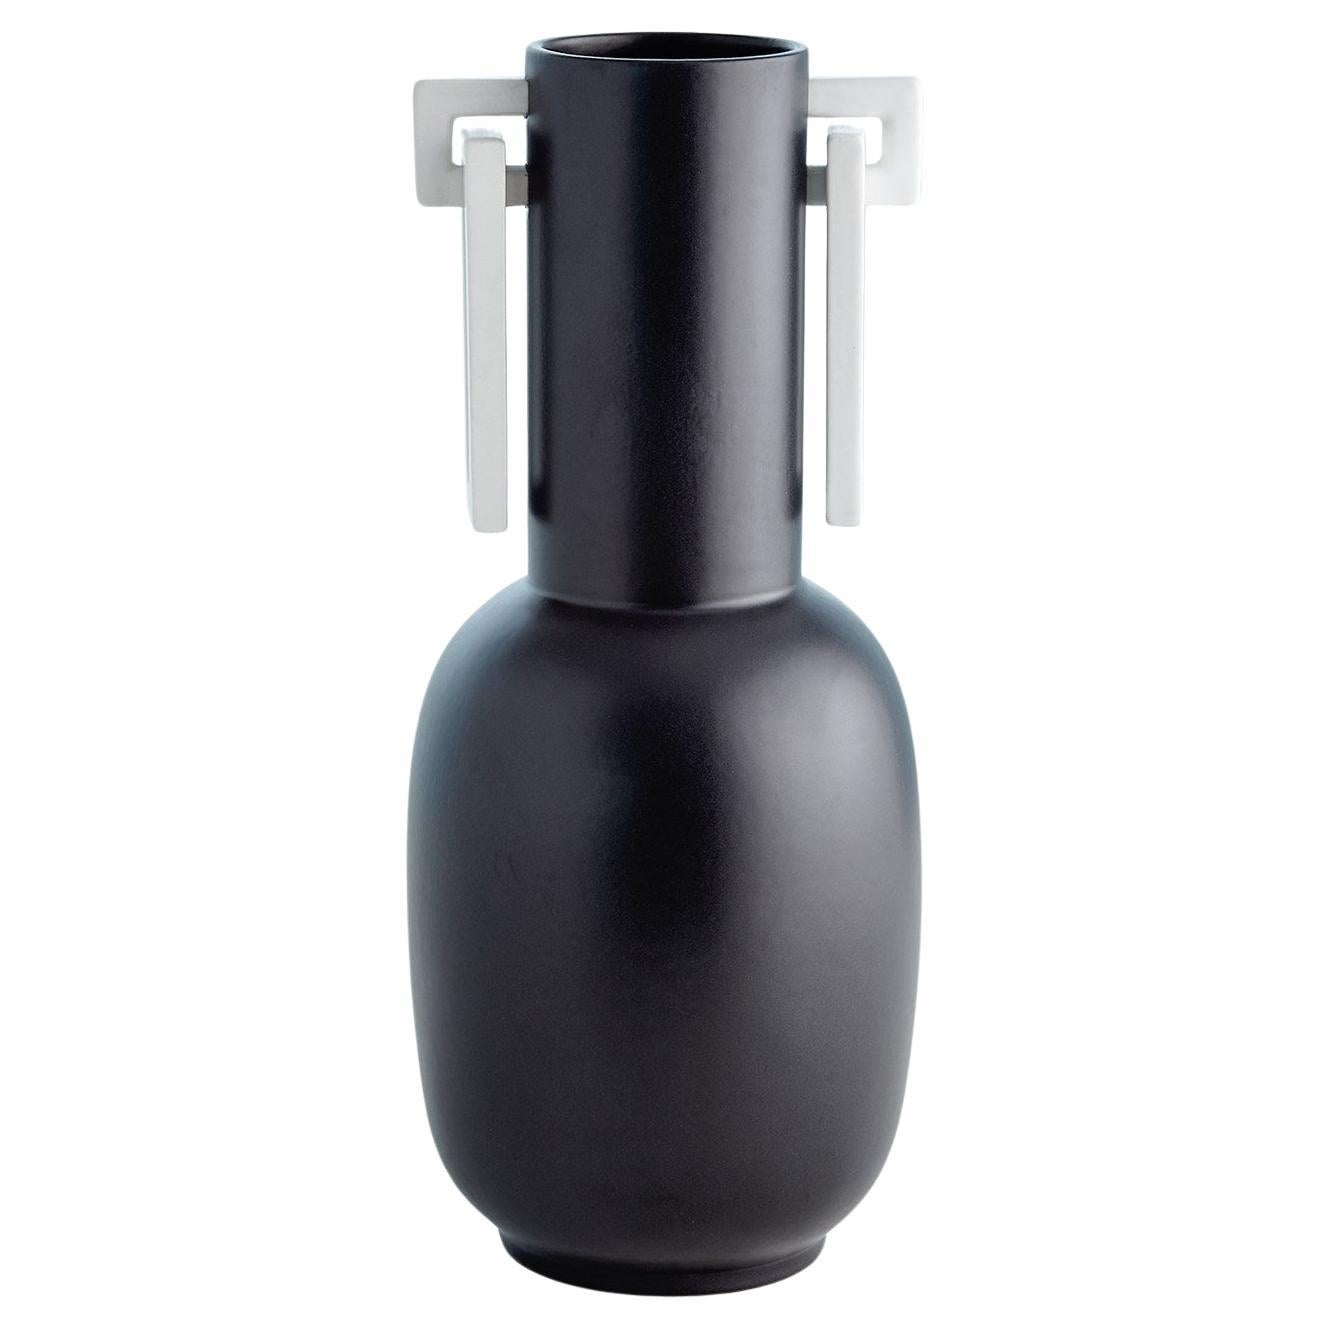 Vase grec en céramique portugaise noire mate 
Équipé de poignées angulaires revêtues de poudre blanche.
Source : Martyn Lawrence Bullard
 

